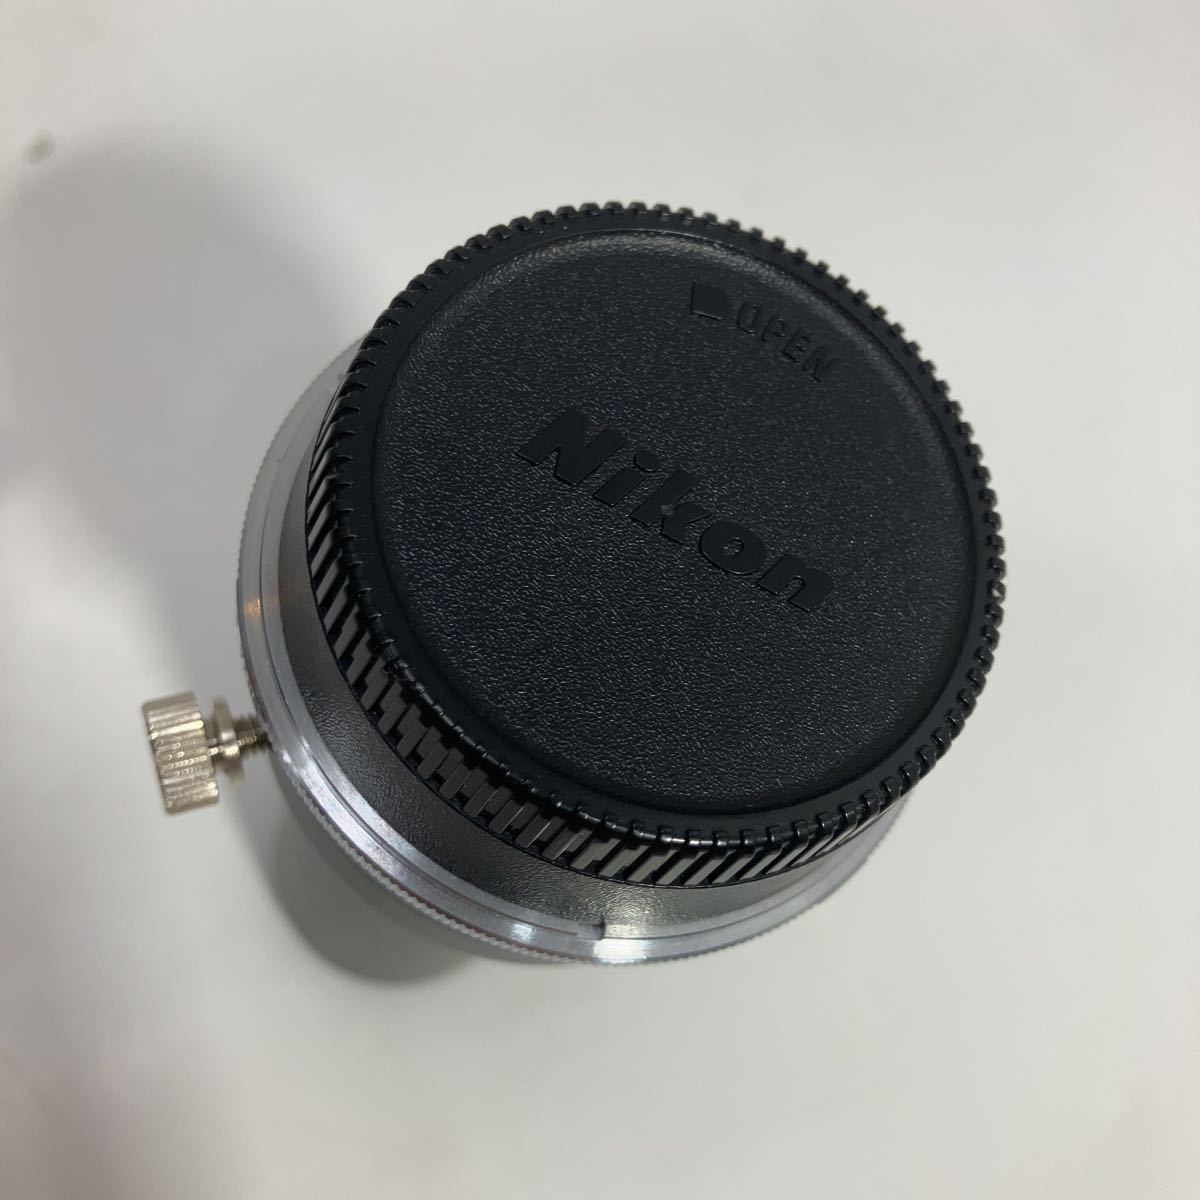 ニコン Nikon フィールドスコープ アタッチメント 800mm F13.3_画像4